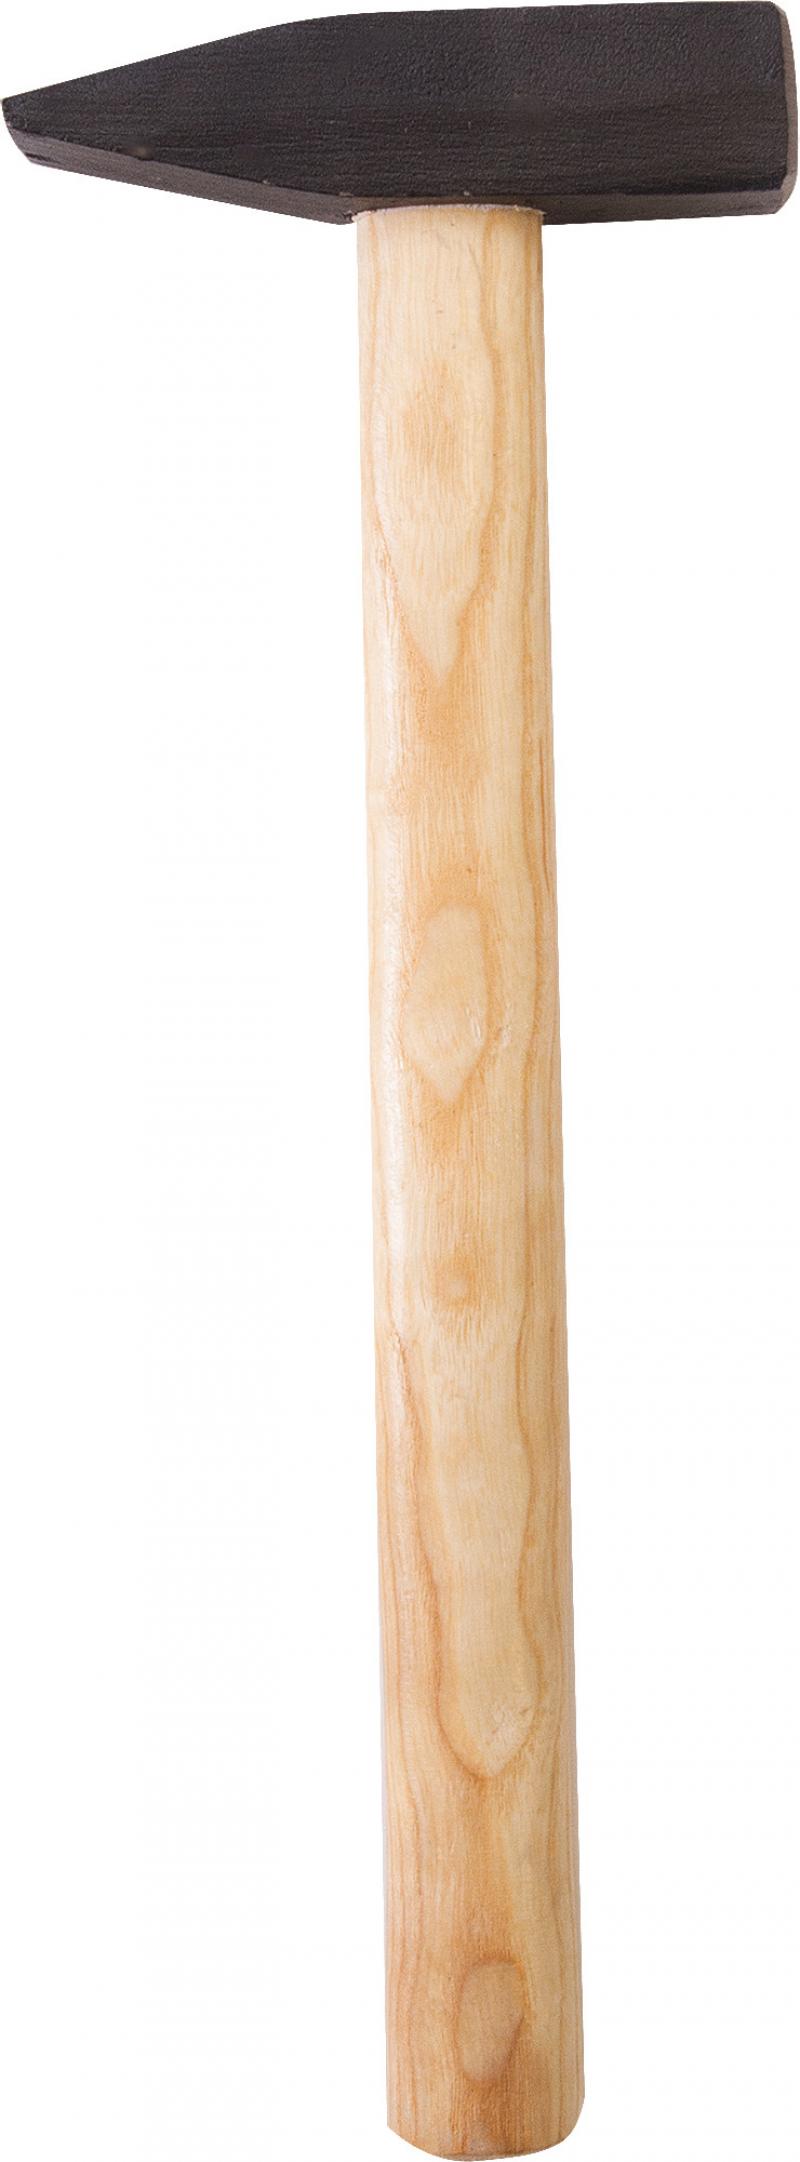 Молоток слесарный «Спец», 800 г, деревянная рукоятка